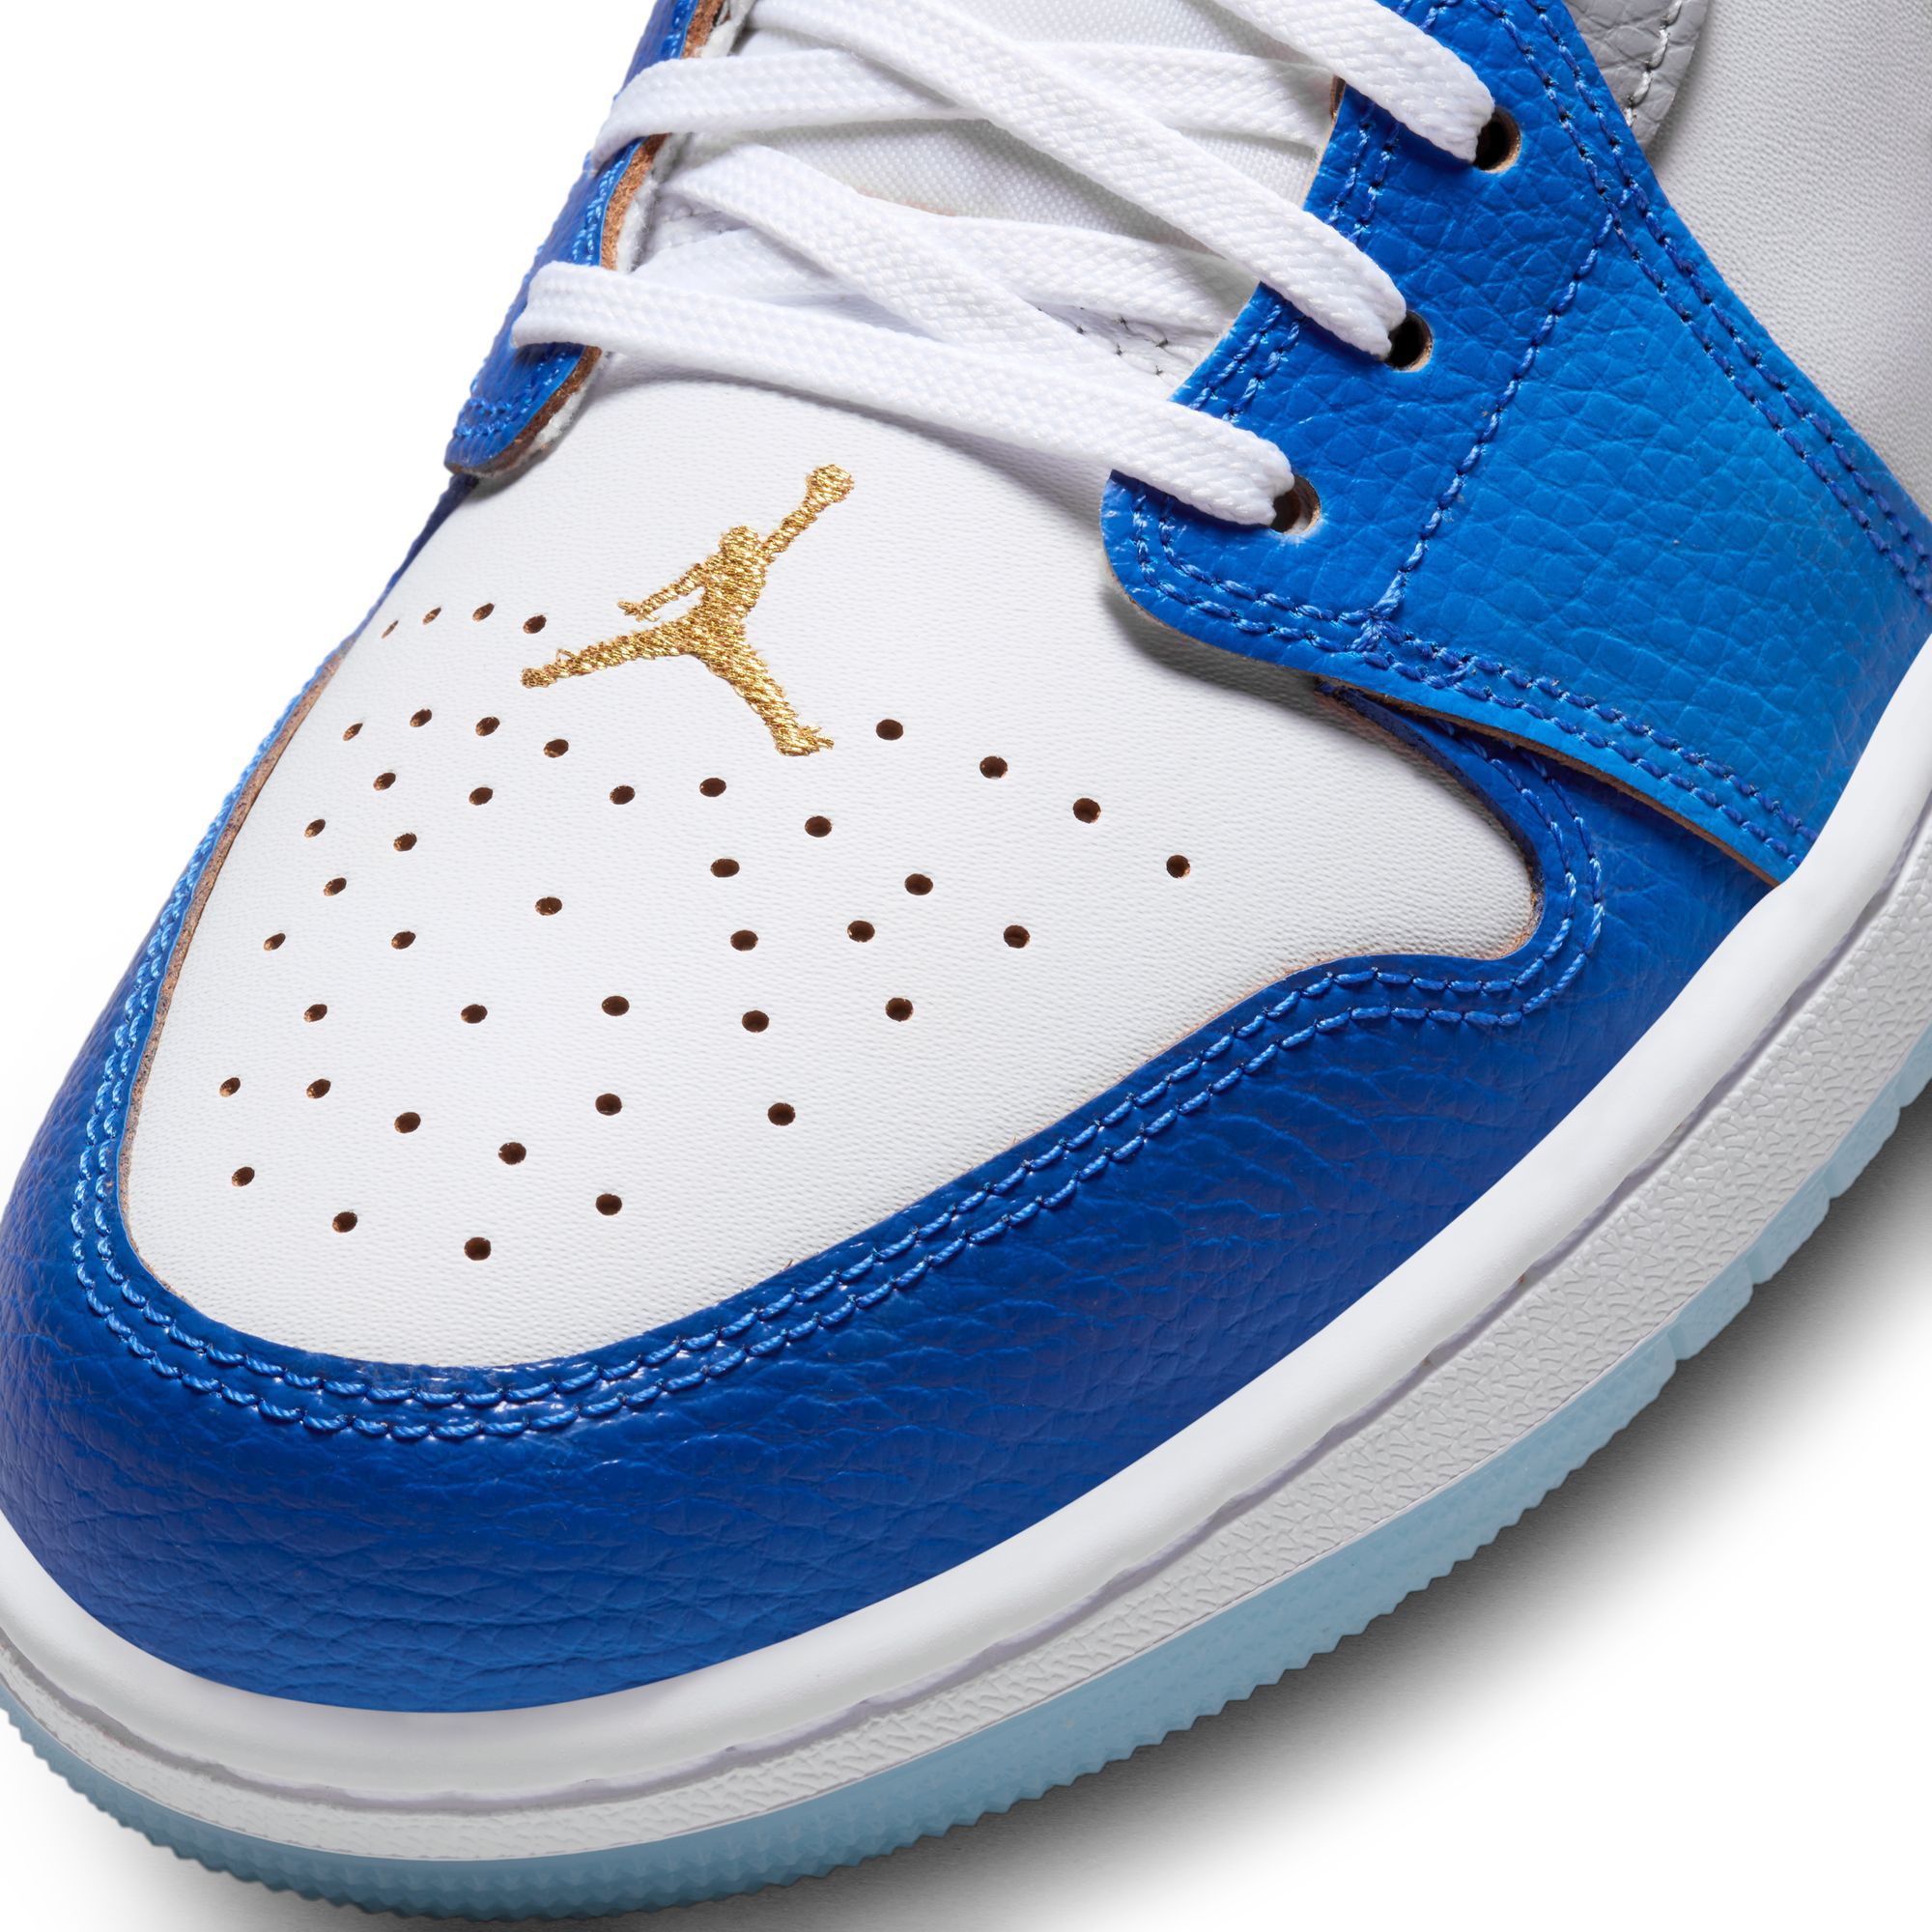 The Air Jordan 1 Low Returns In Star Blue